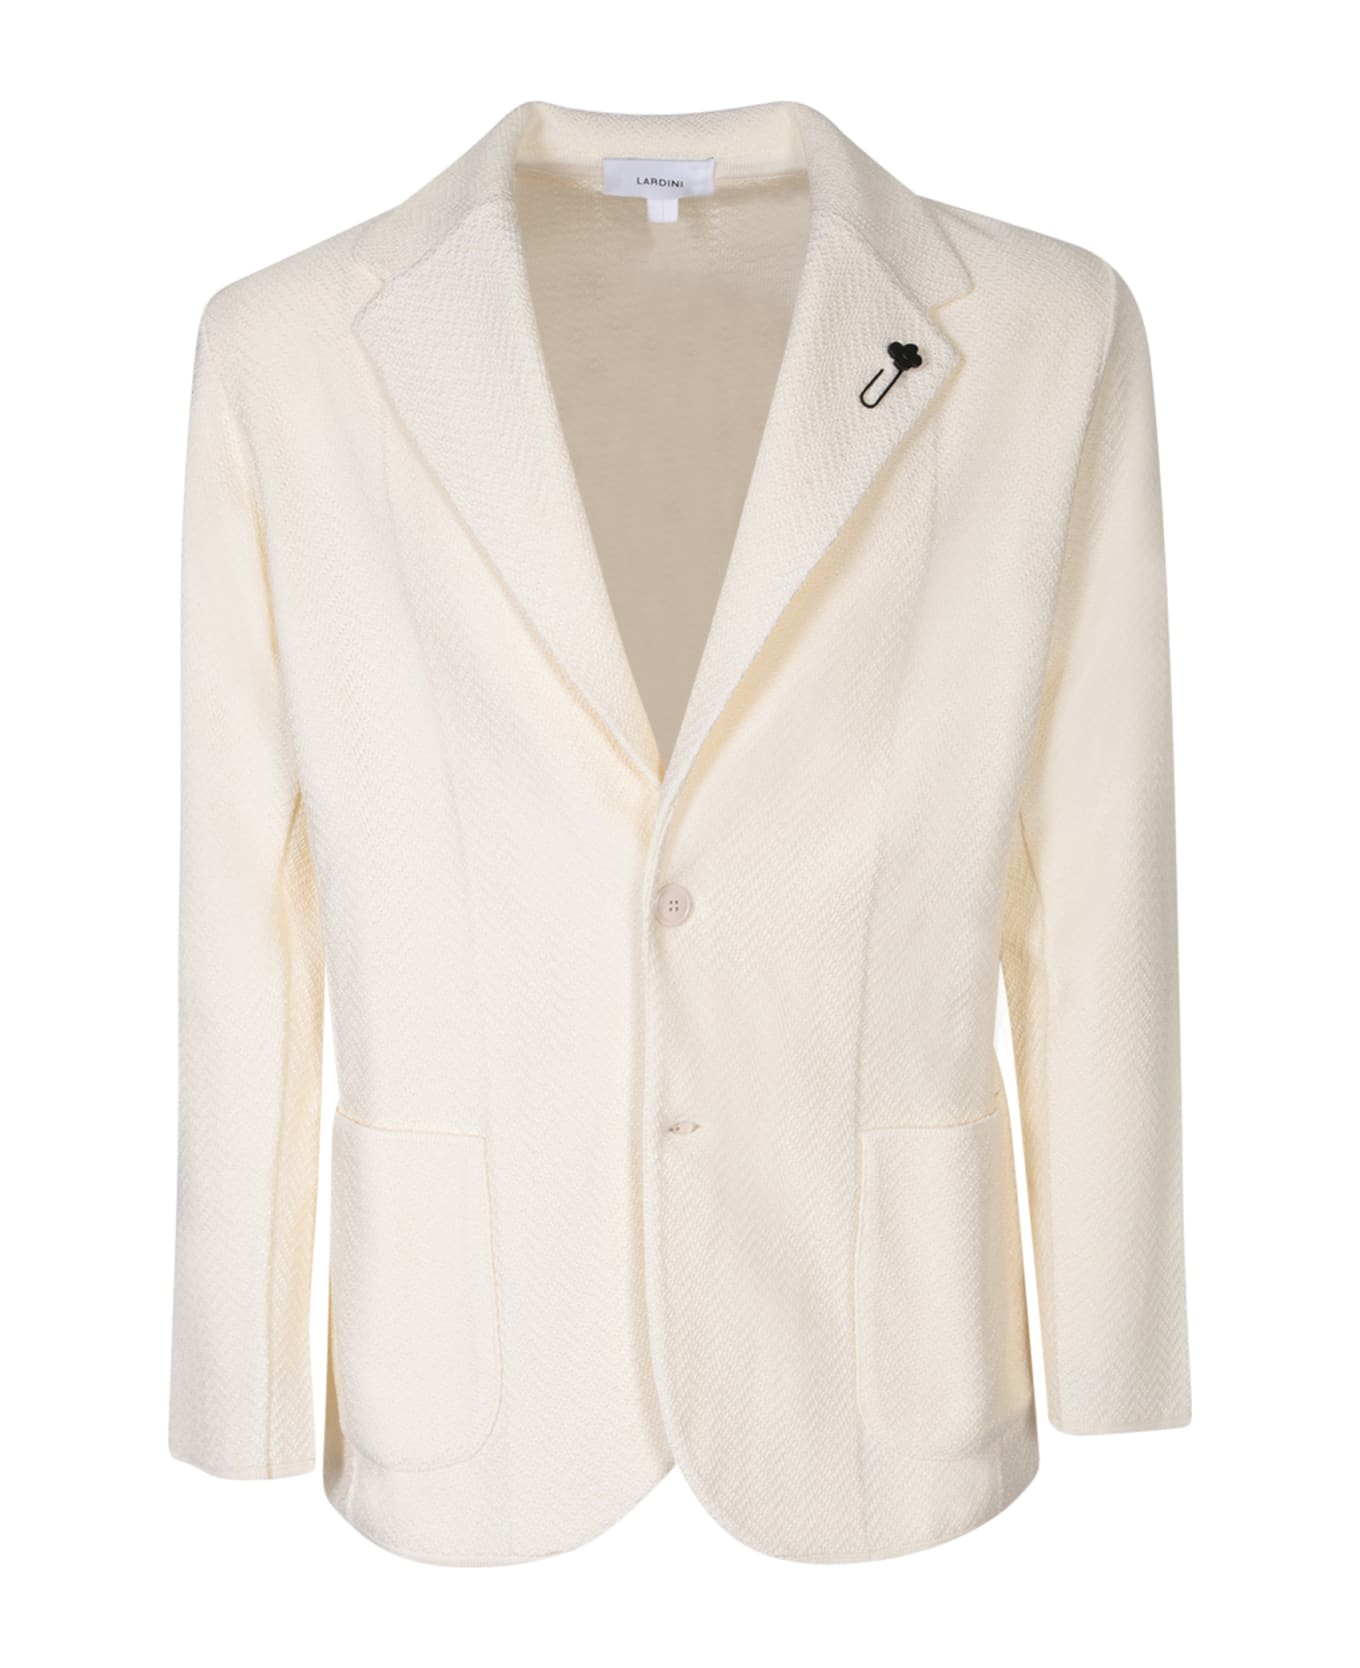 Lardini Herringbone Ivory Cardigan Style Jacket - White